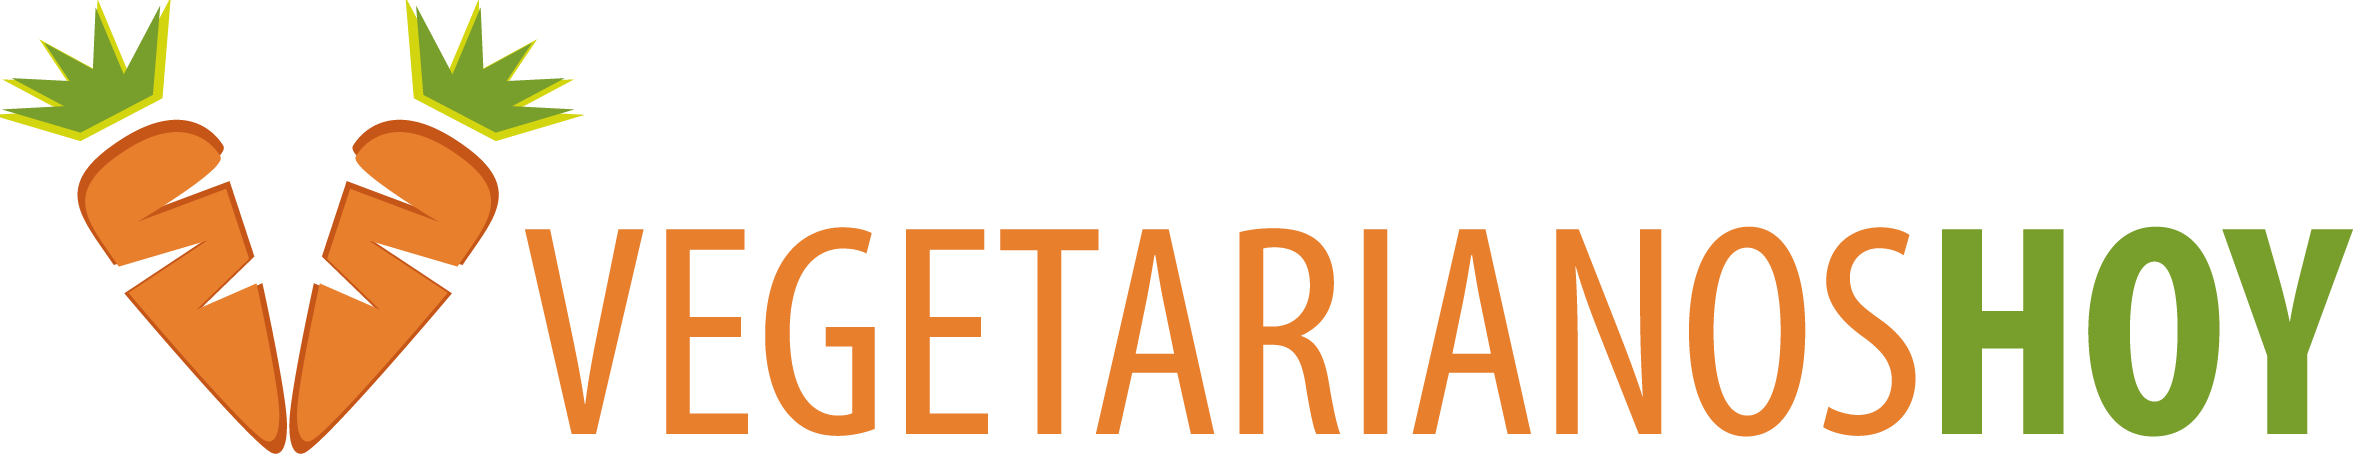 Fundación Vegetarianos Hoy logo